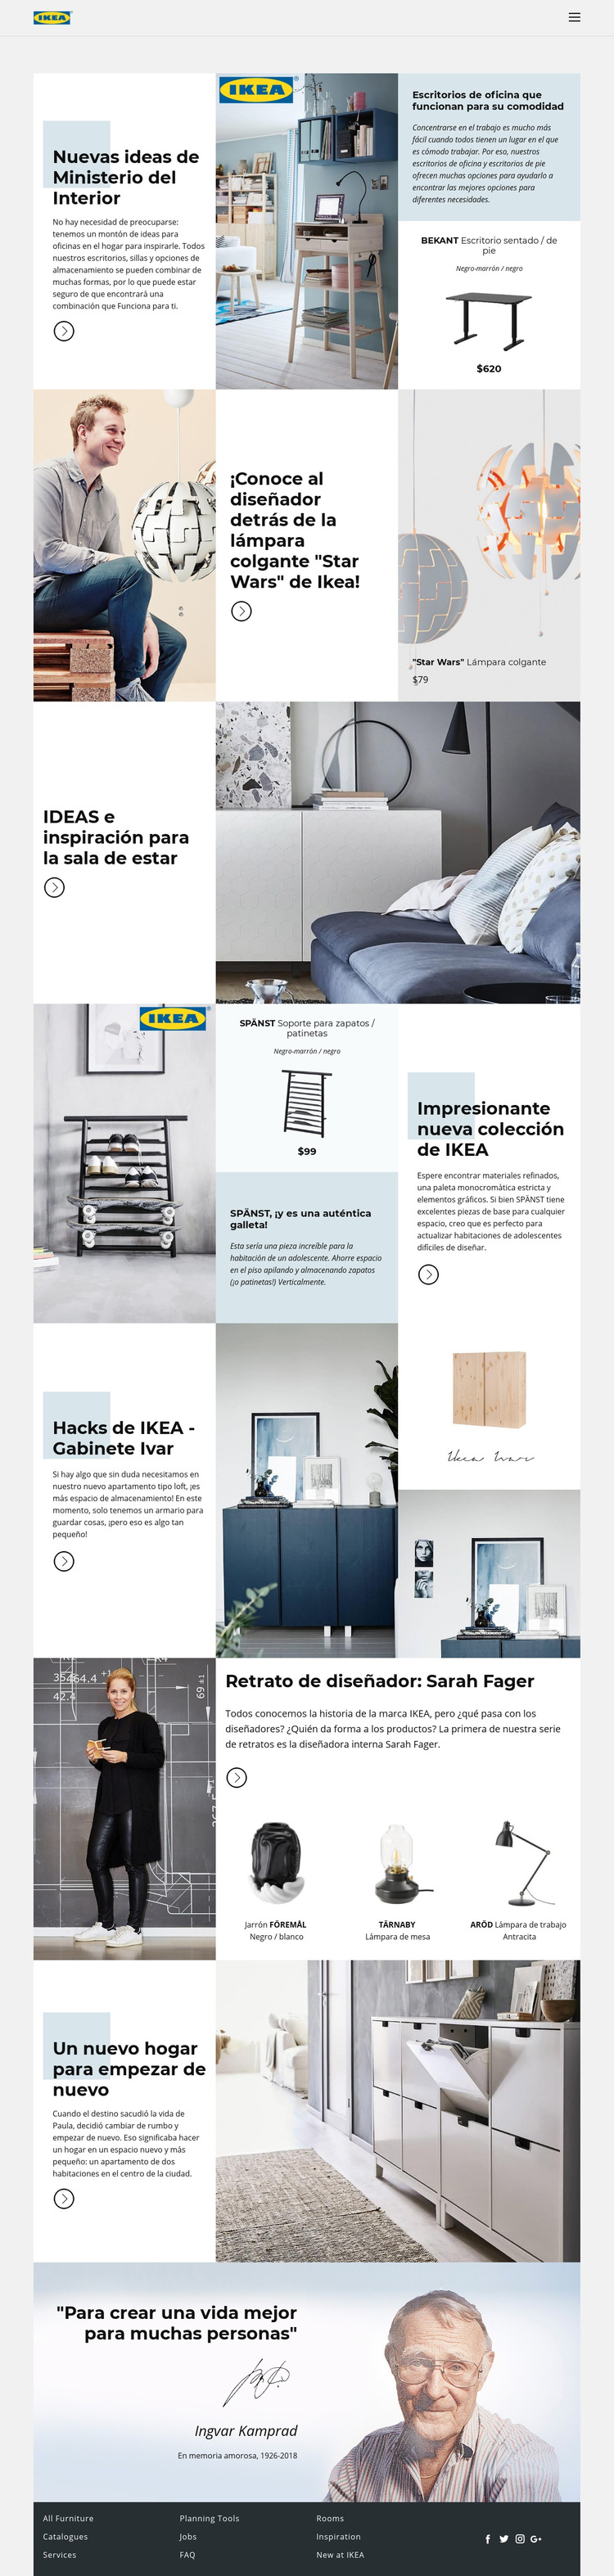 Inspiración de IKEA Plantilla de sitio web